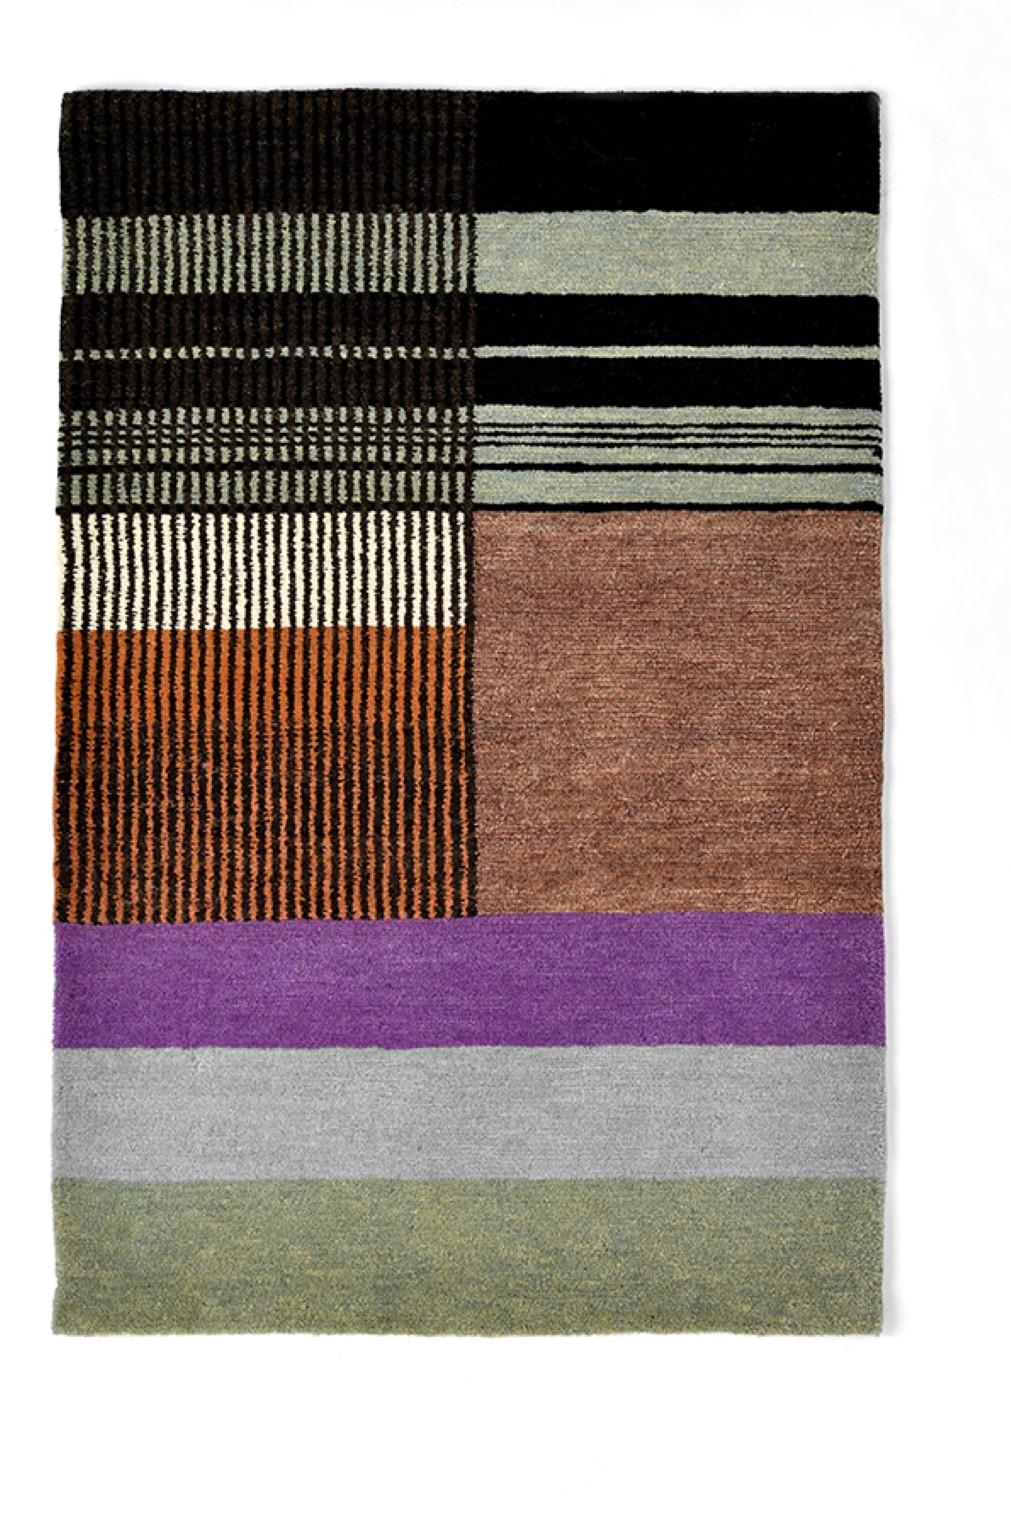 Affiche textile nouée à la main n° 233 de Lyk Carpet
Hommage aux femmes du Bauhaus
Dimensions : L 56 x L 84 cm.
Matériaux : 100% laine des hauts plateaux tibétains, laine vierge peignée et filée à la main, laine naturelle teintée dans la masse, 100